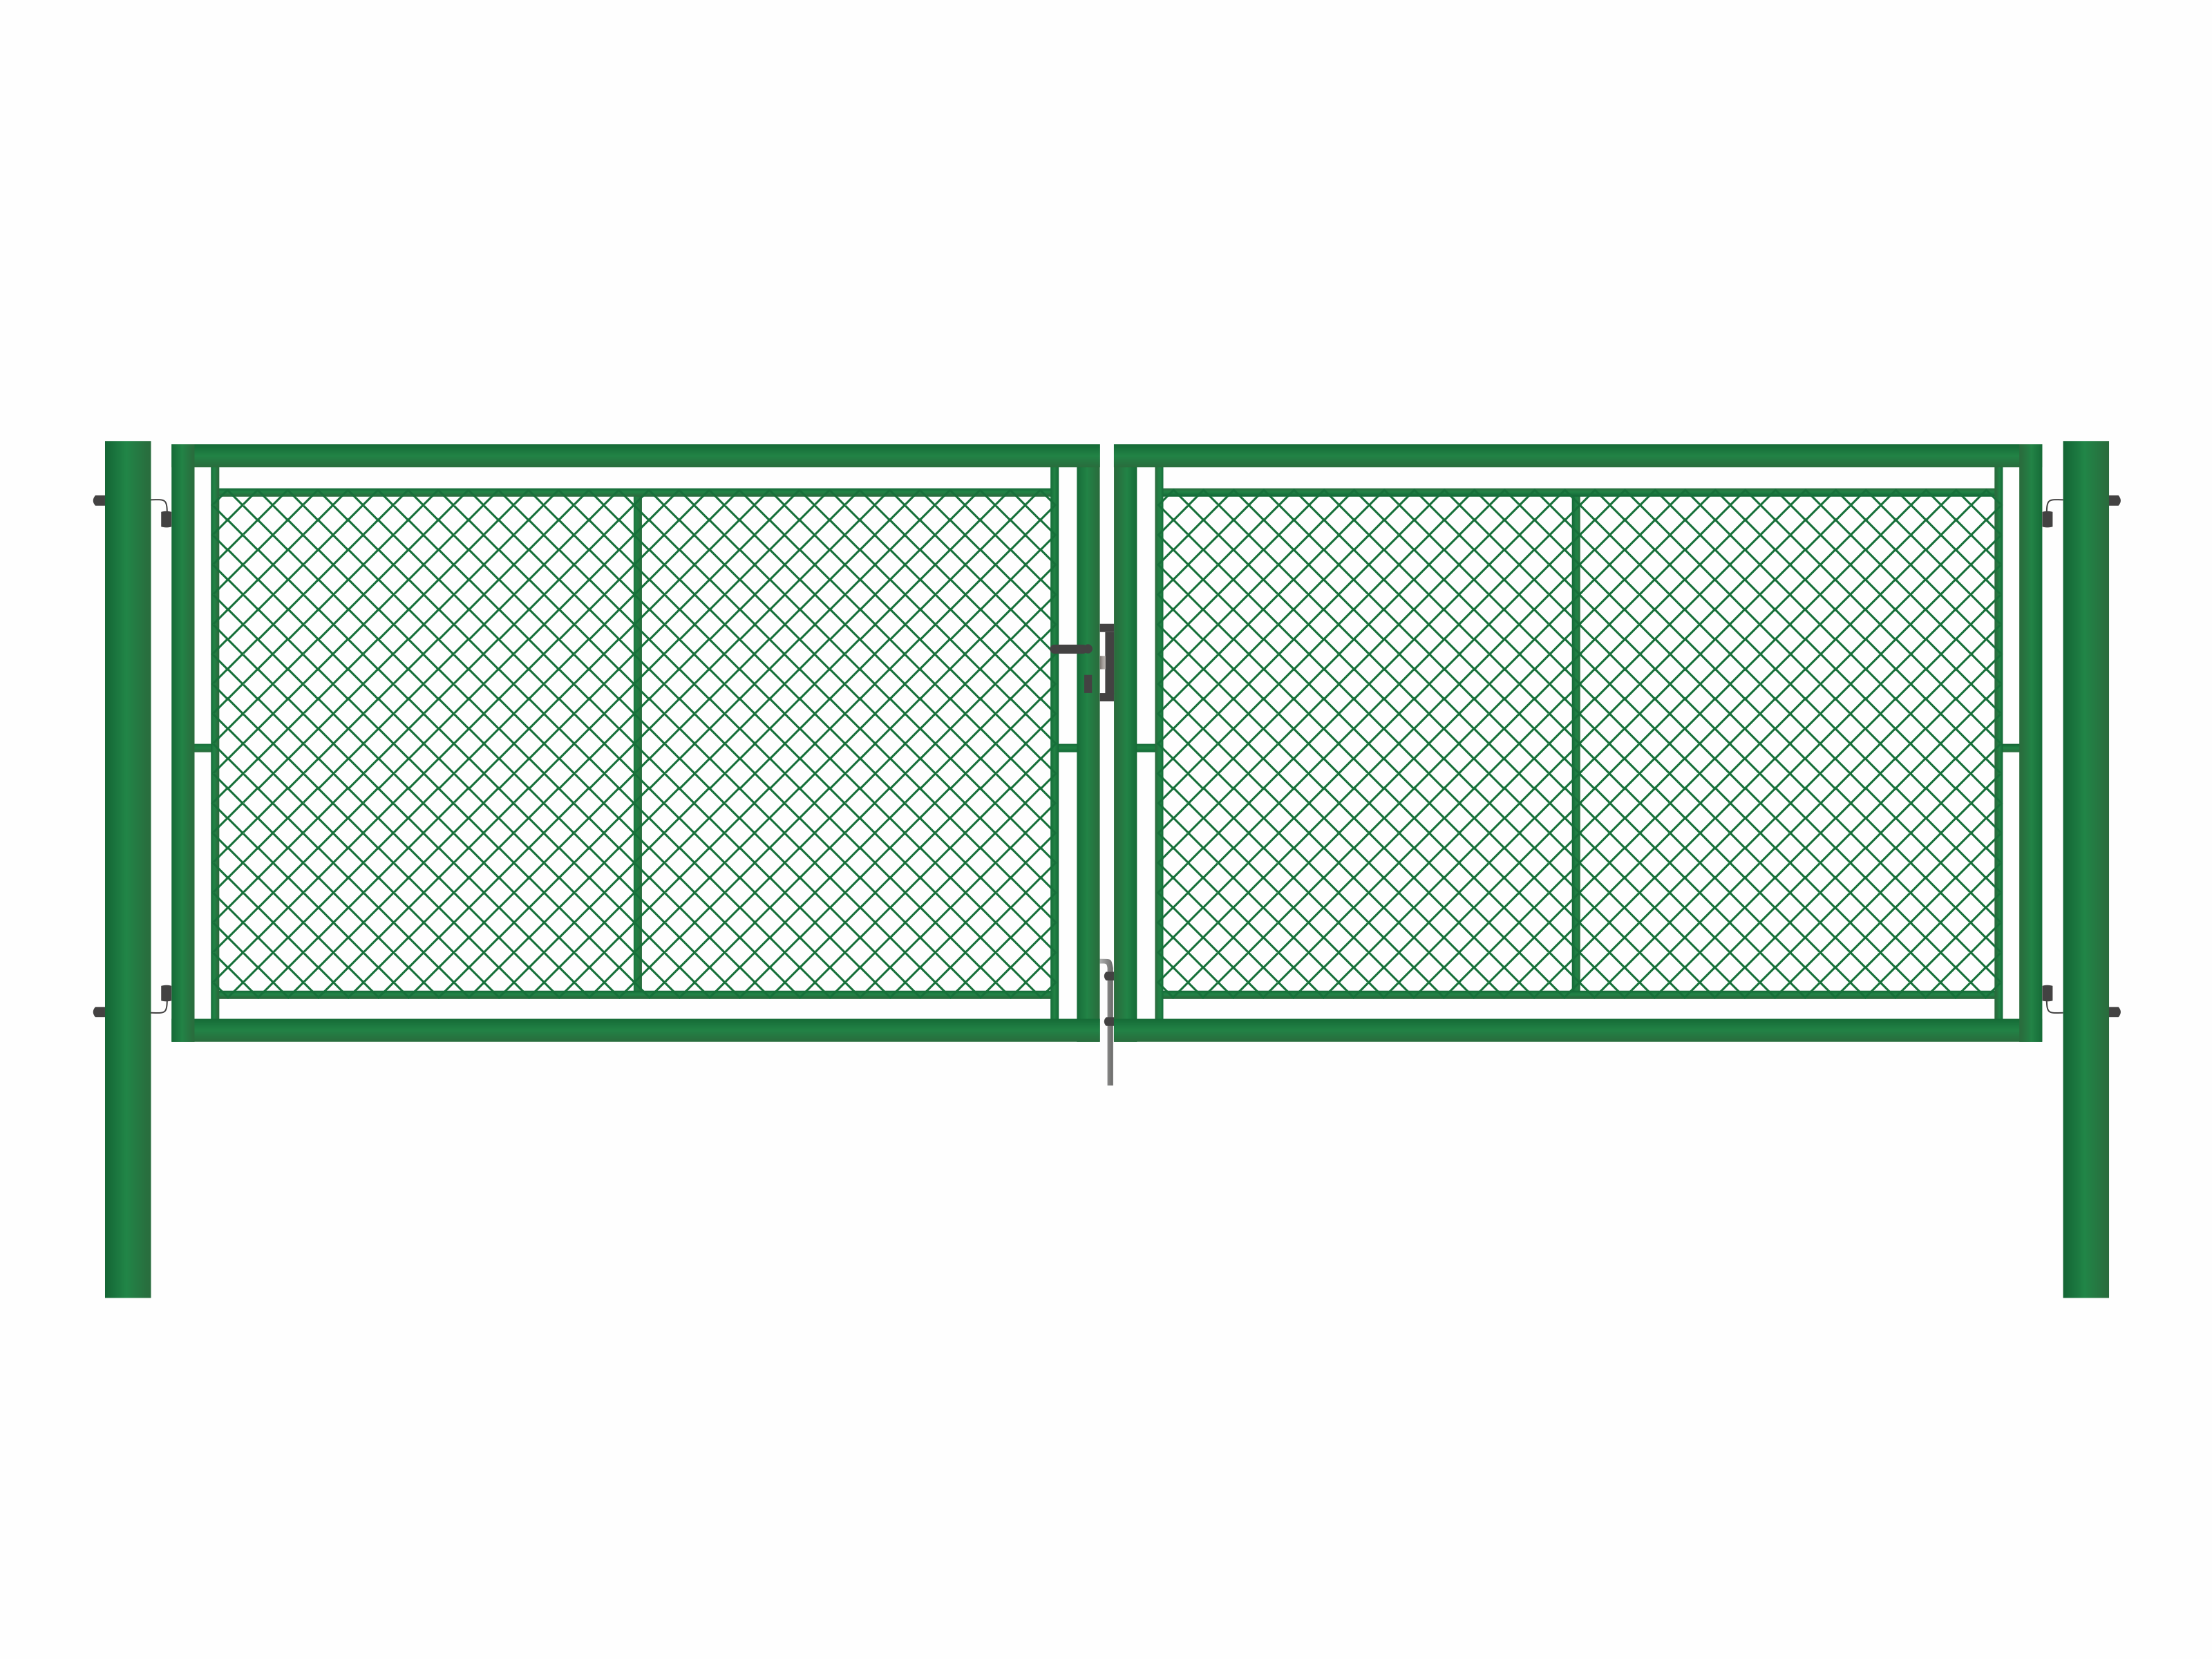 Brána zahradní dvoukřídlá zelená, výška 195 x 500 cm, FAB, s výplní klasického pletiva